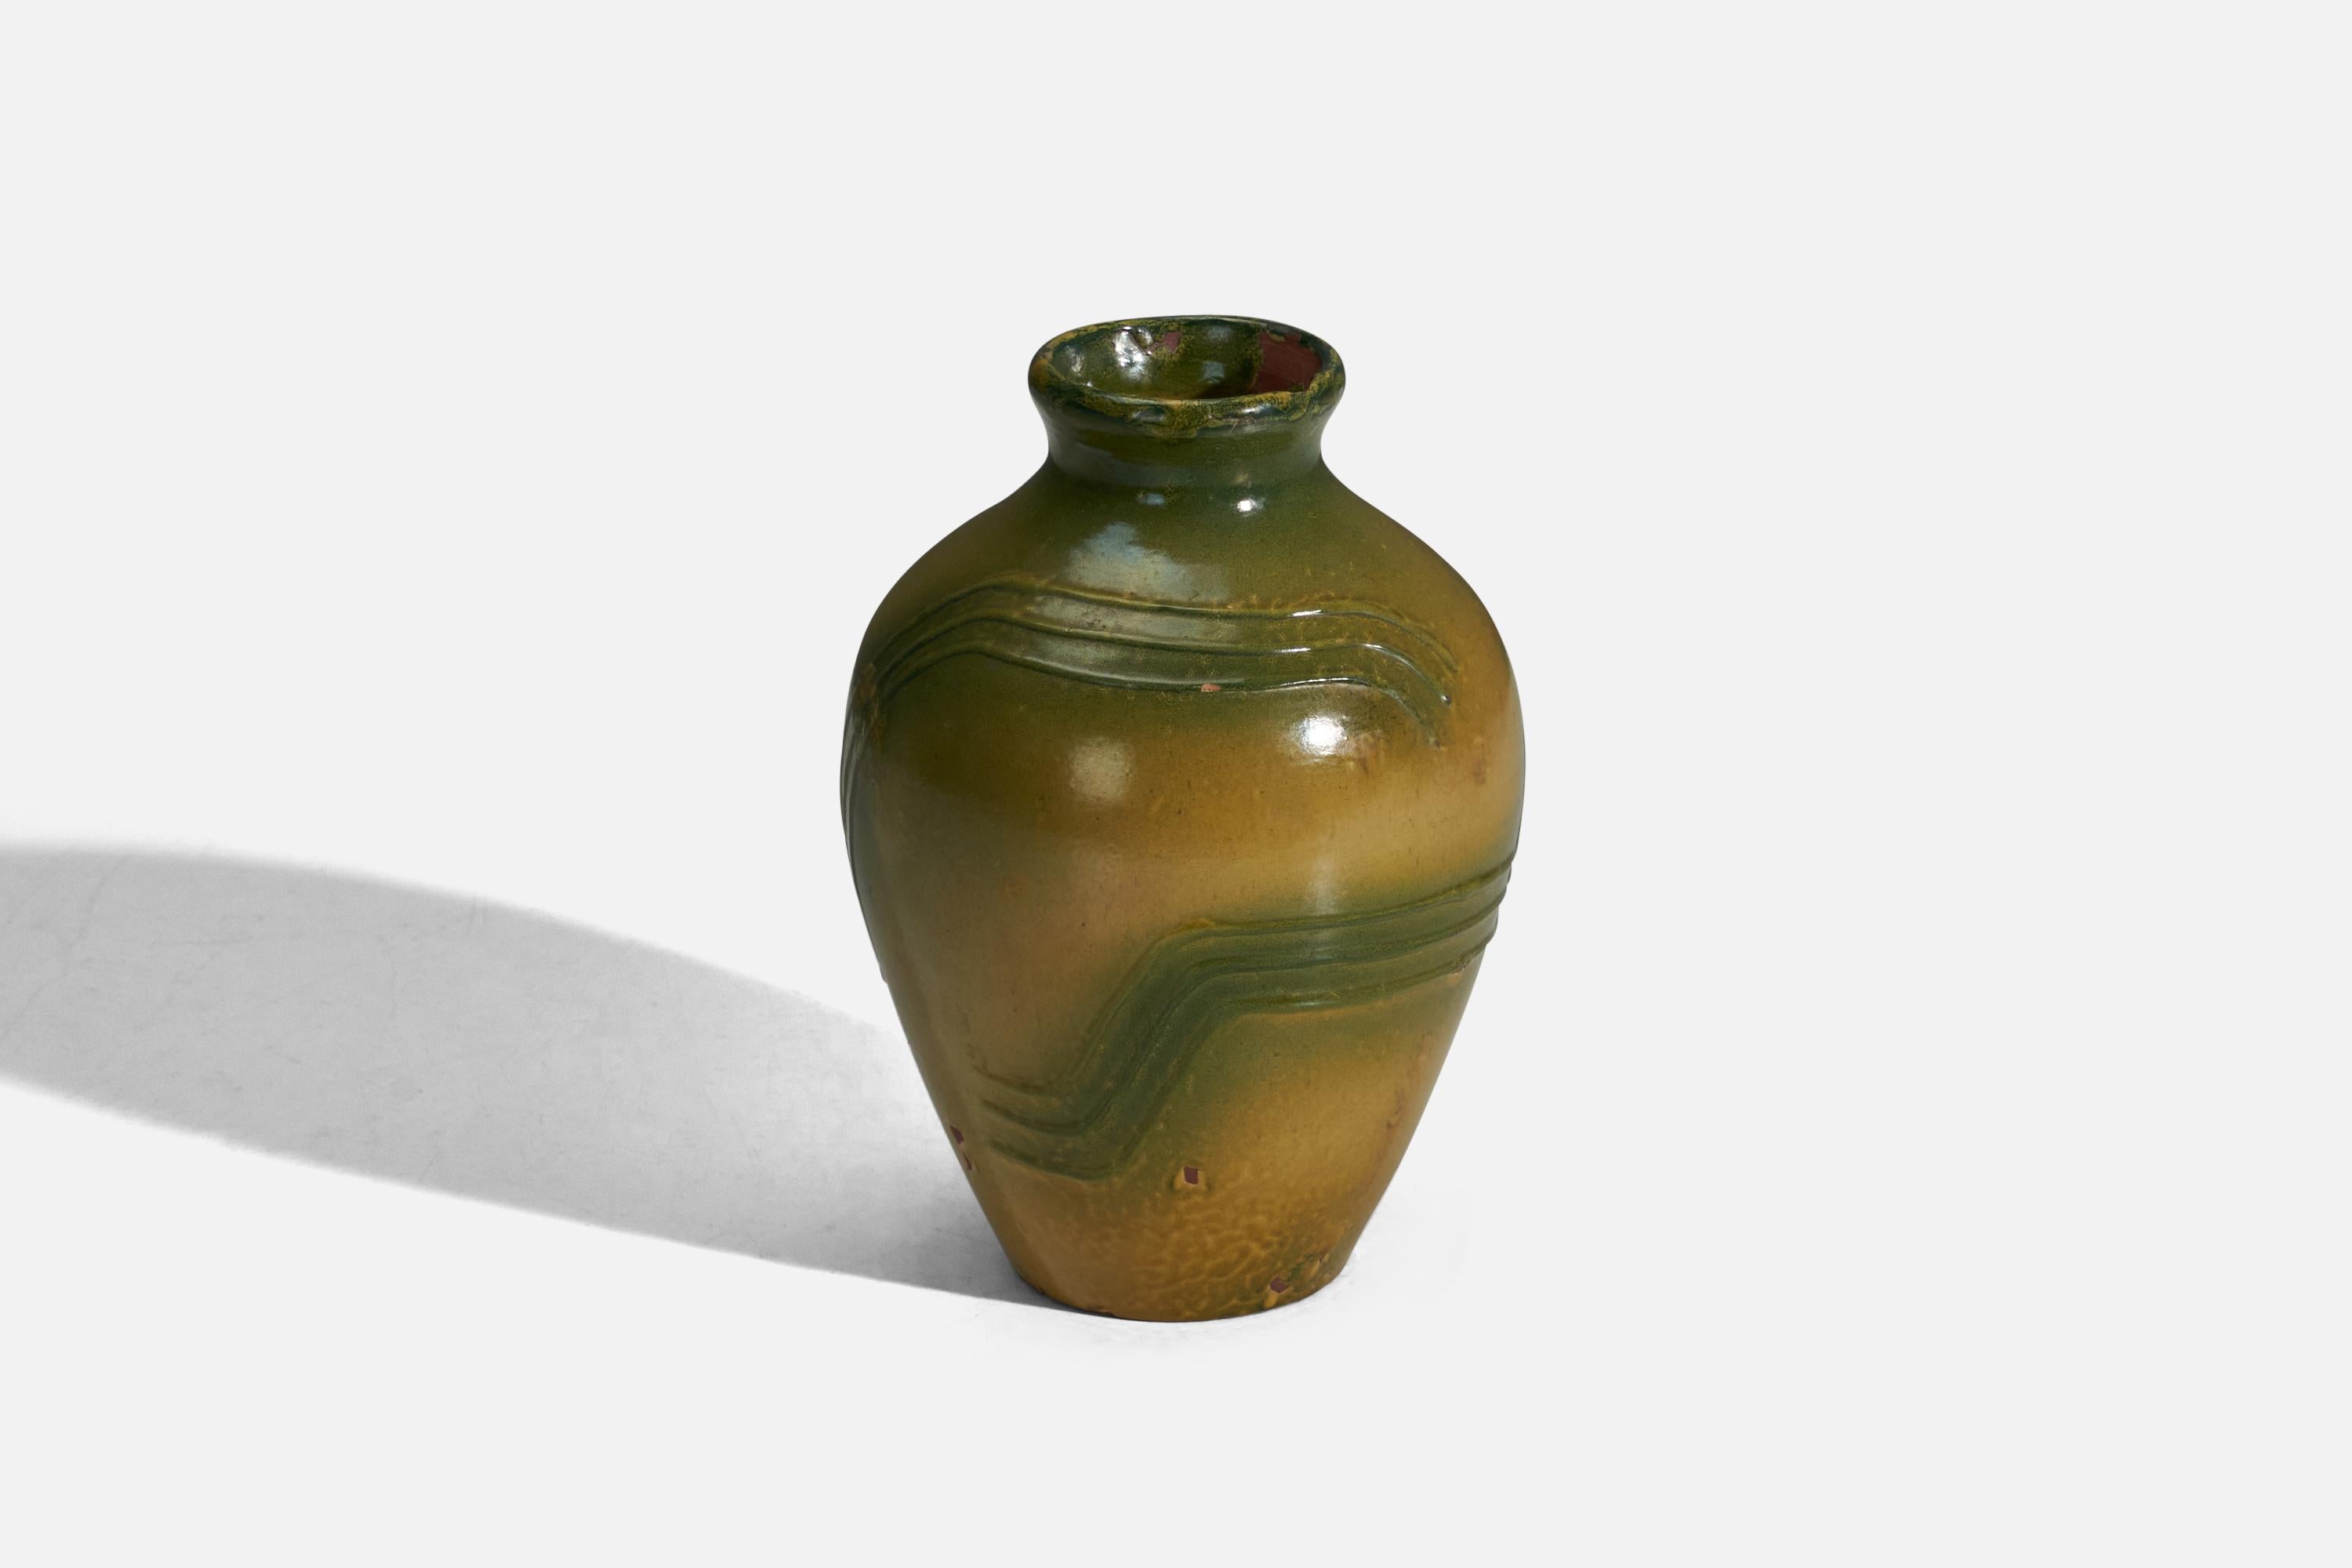 Scandinavian Modern Erik Mornils, Vase, Green and Yellow Glazed Earthenware, Nittsjö, Sweden, 1940s For Sale